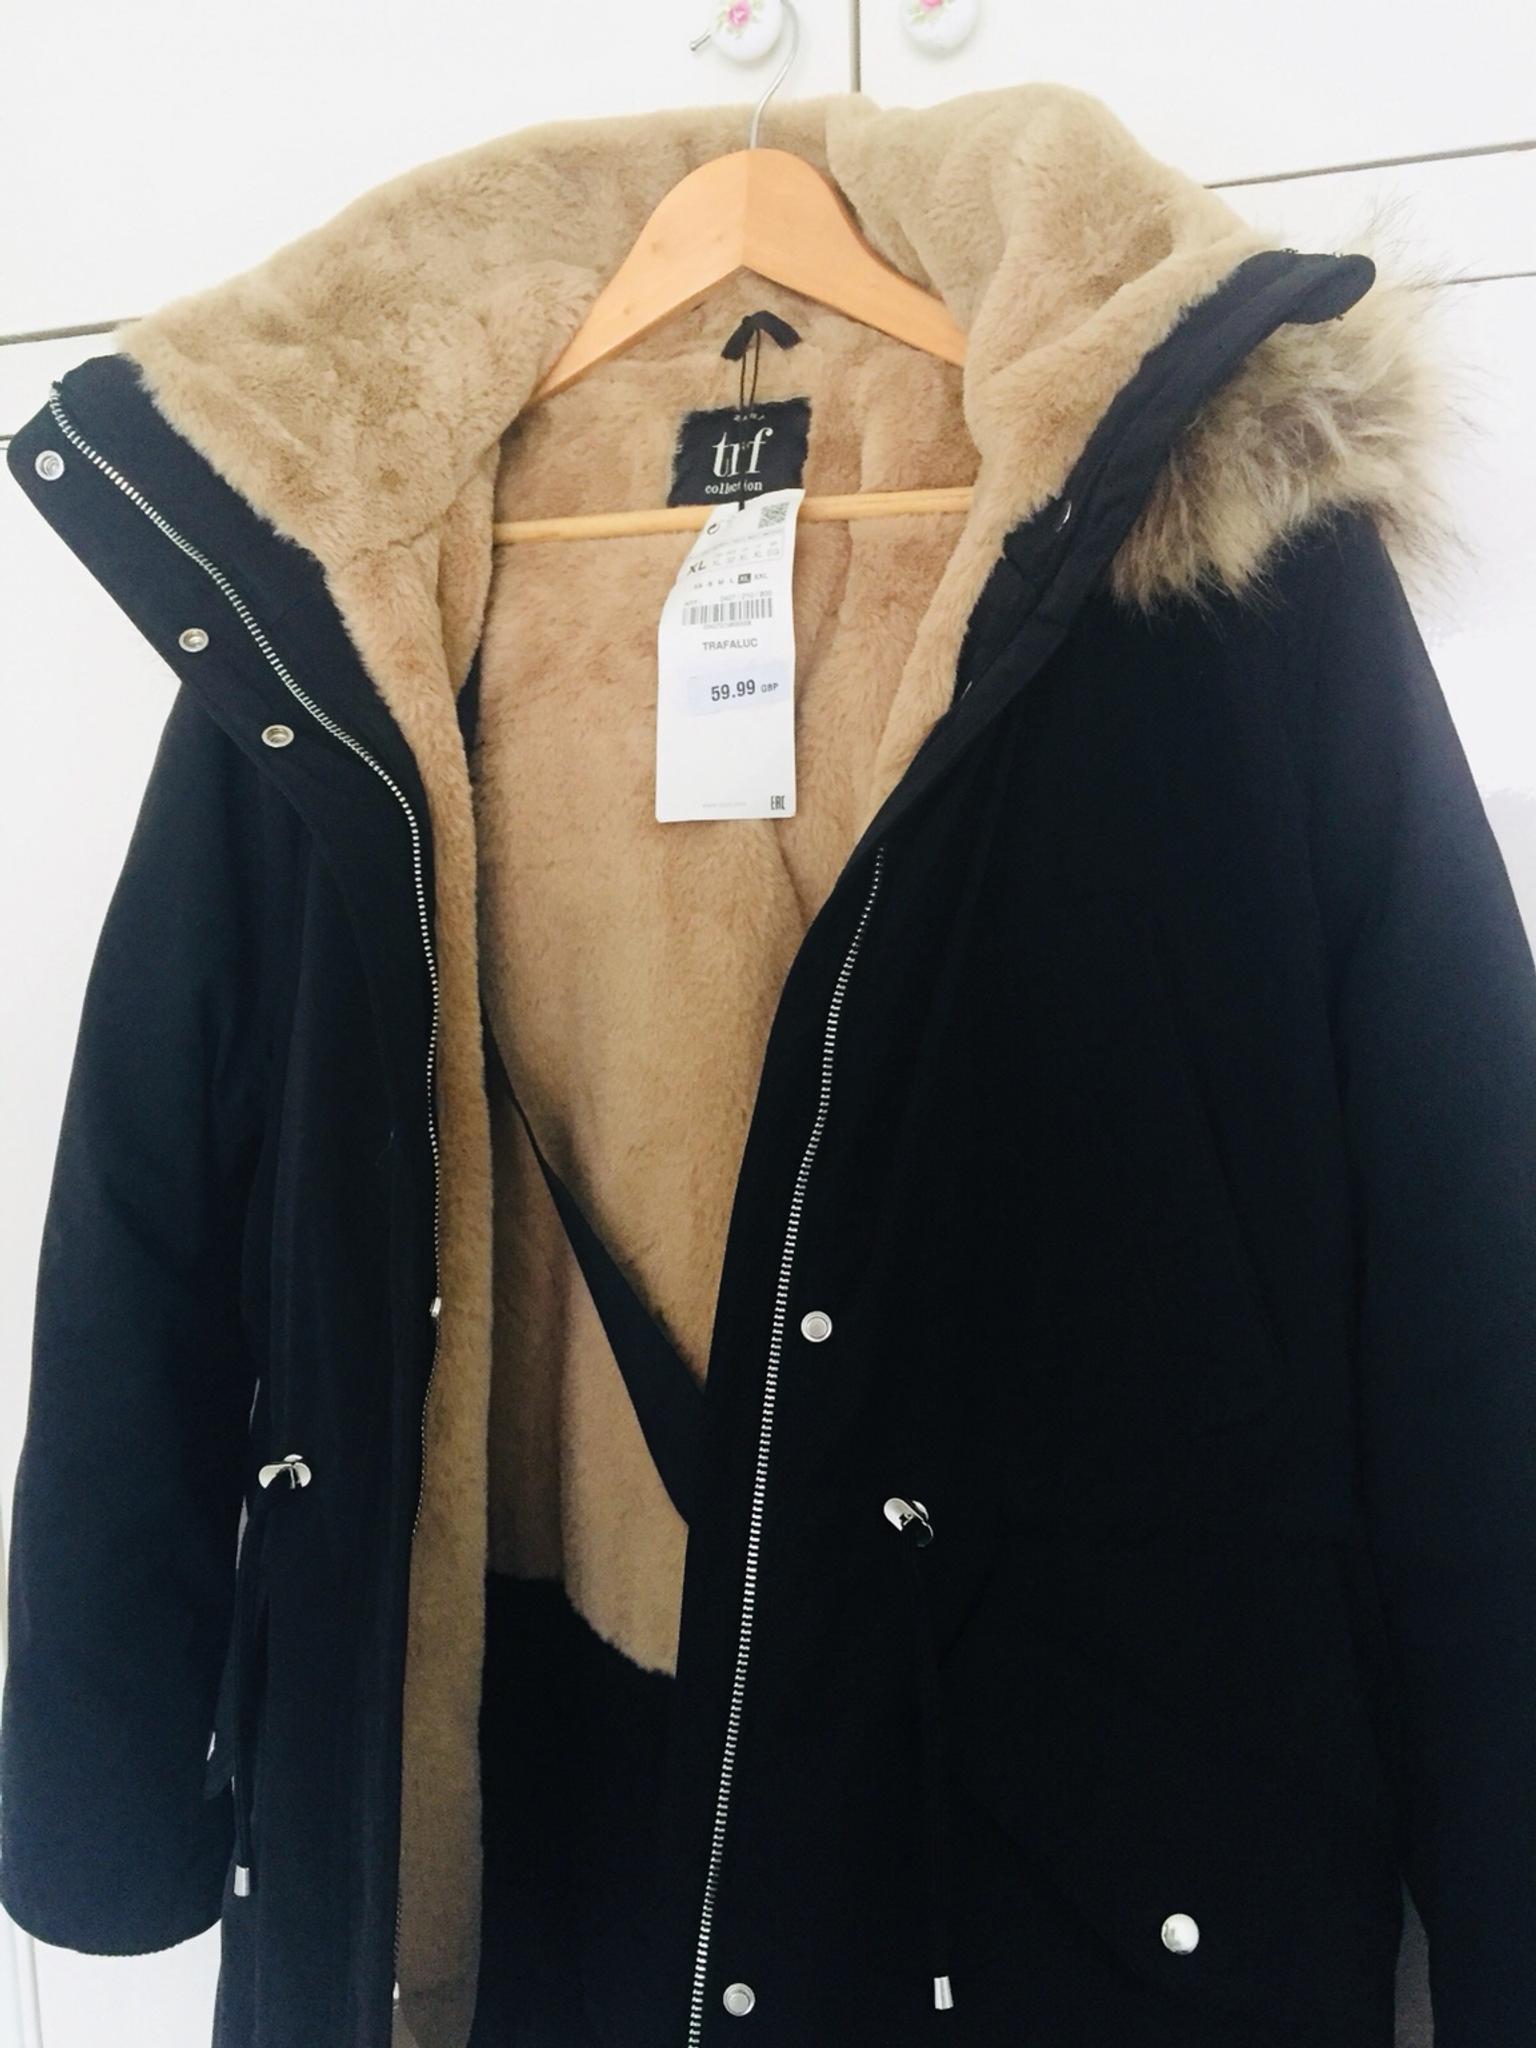 Zara TRF Coat in SM3 London for £30.00 